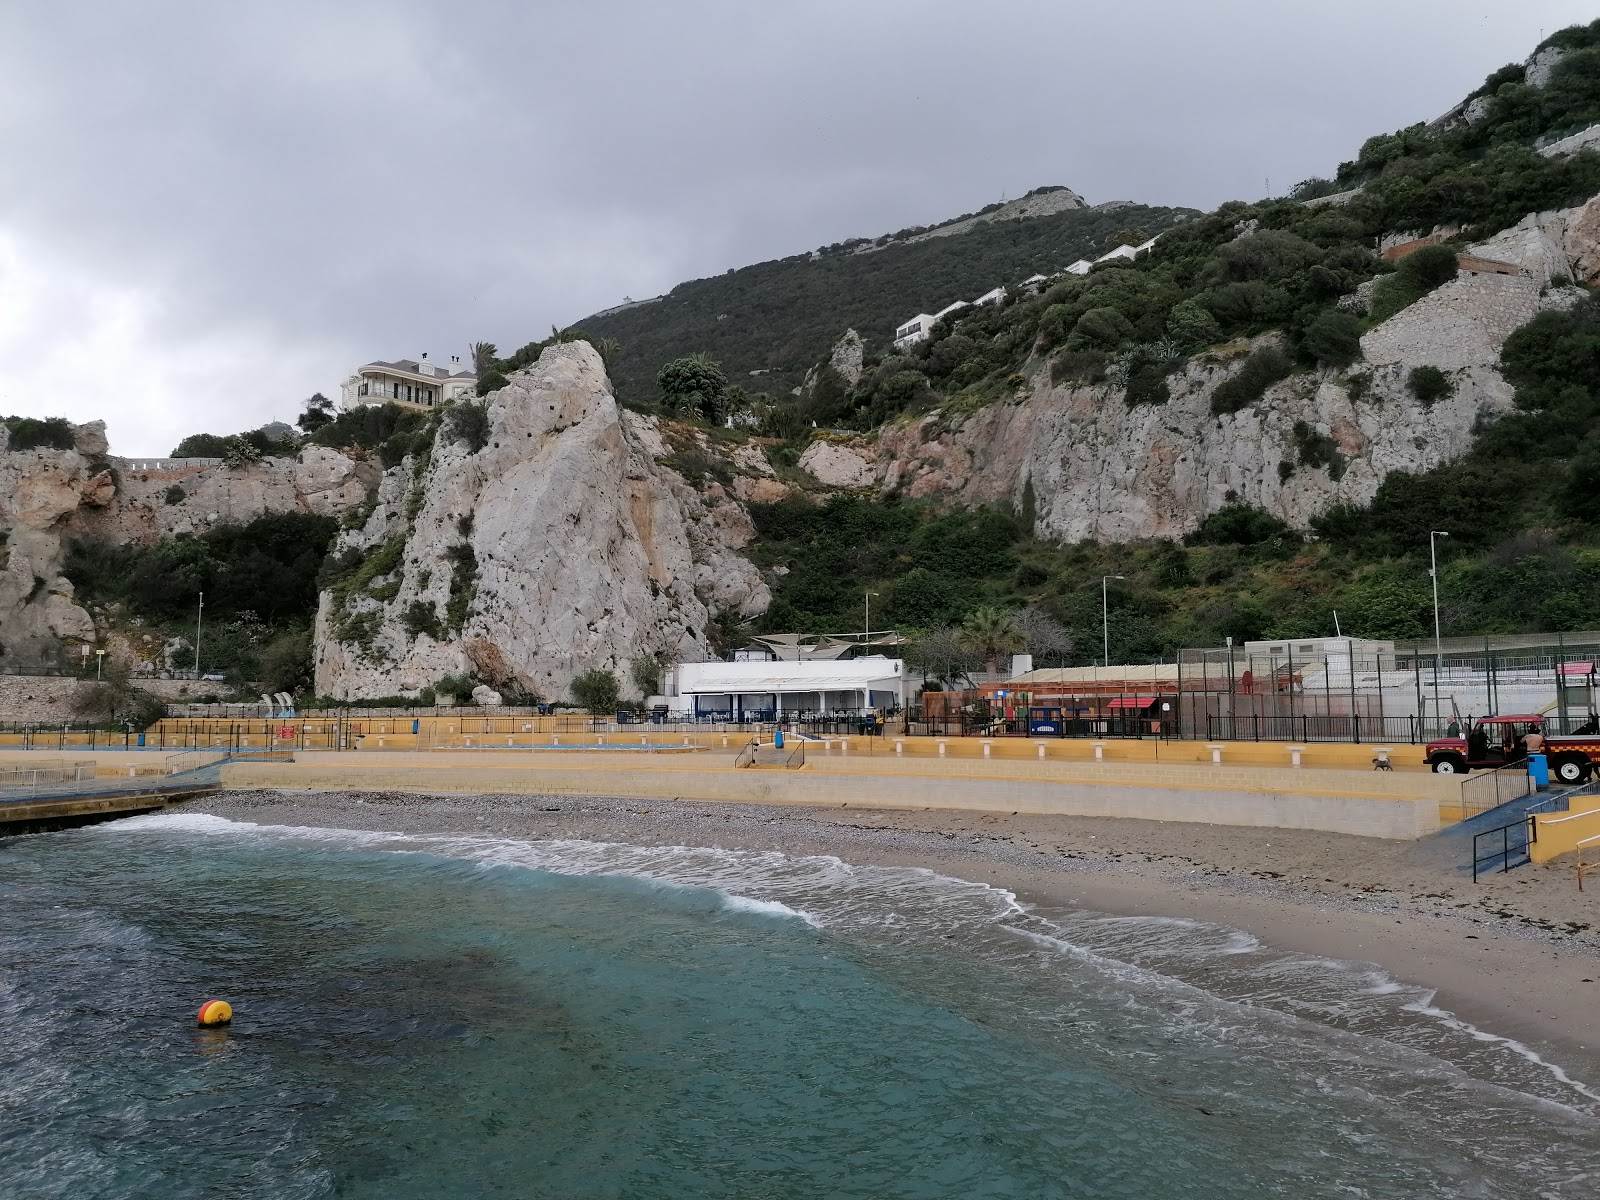 Camp Bay Beach, Gibraltar'in fotoğrafı küçük koylar ile birlikte